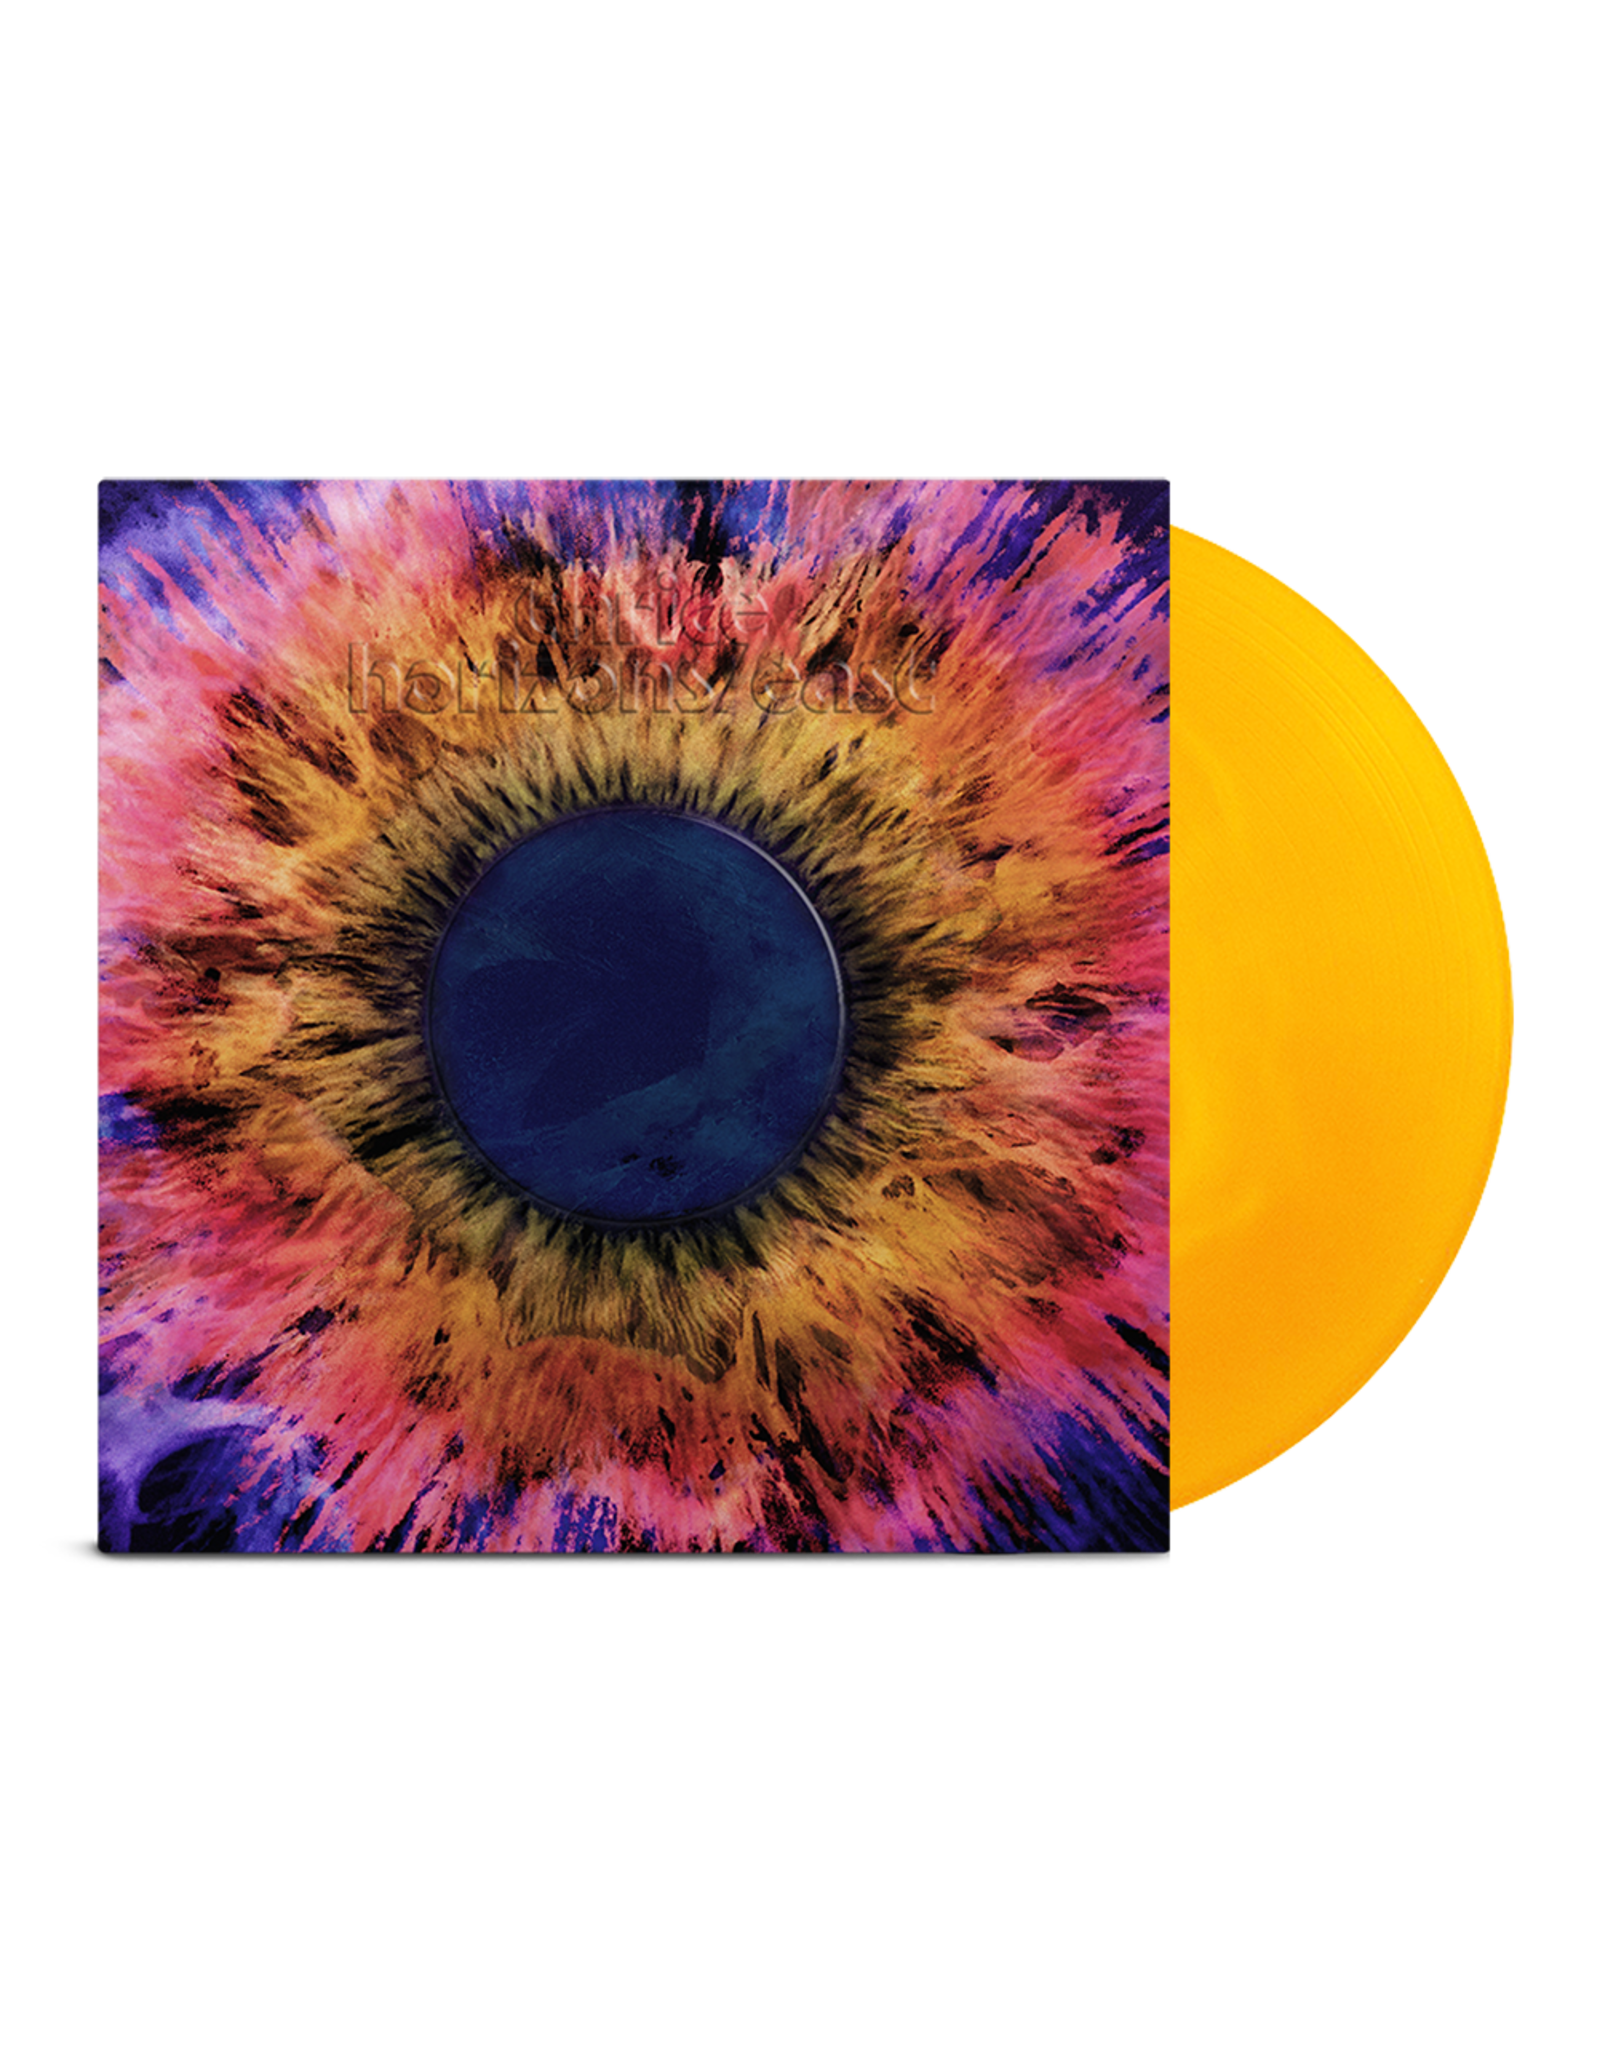 Thrice - Horizons/East (Exclusive Yellow Vinyl)